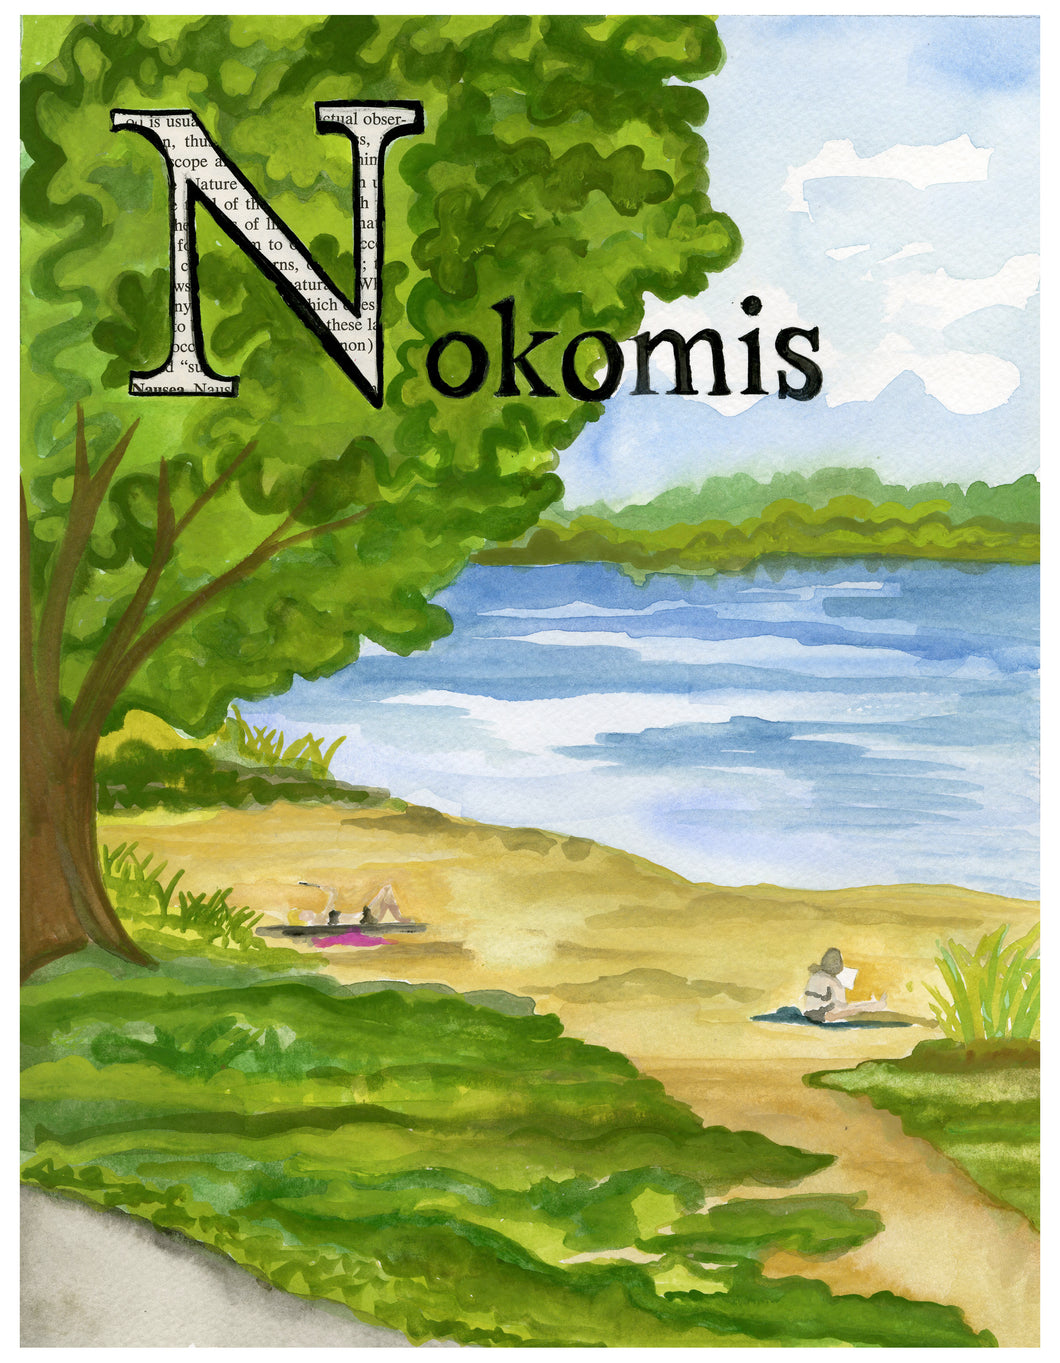 N is for Nokomis